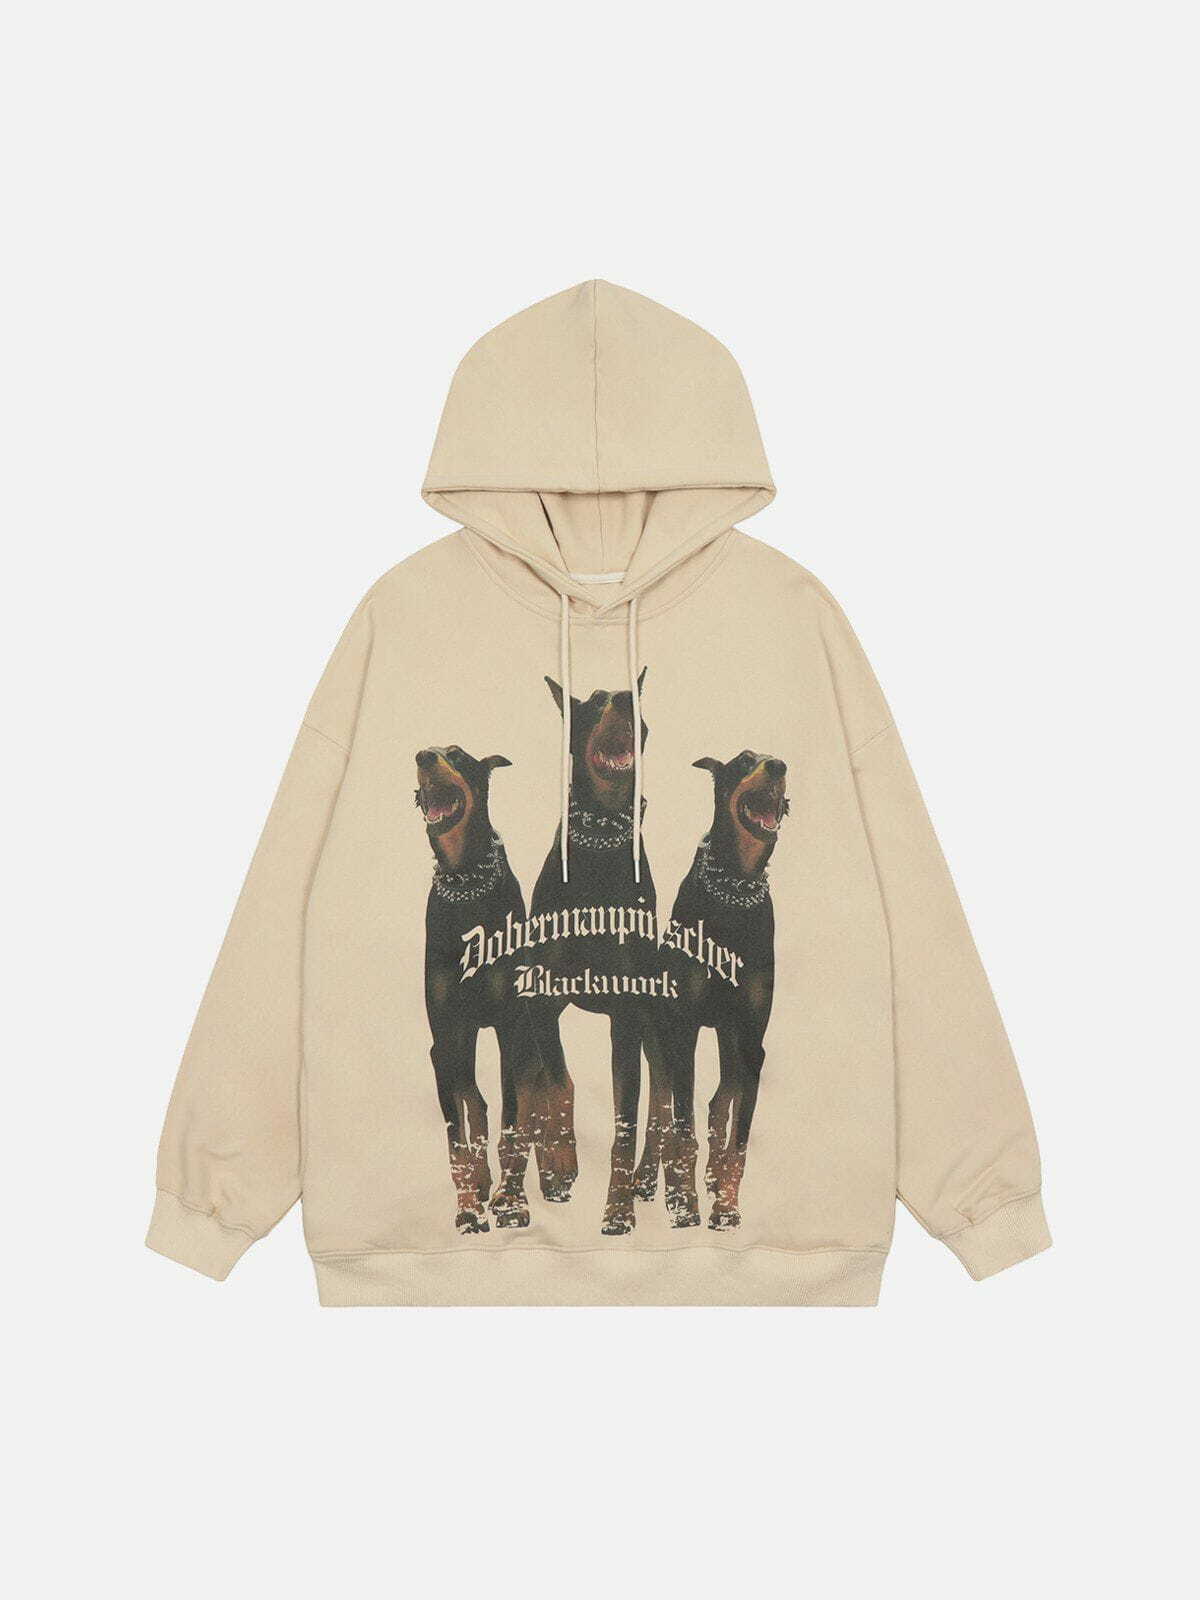 dynamic doberman print hoodie edgy streetwear 7809